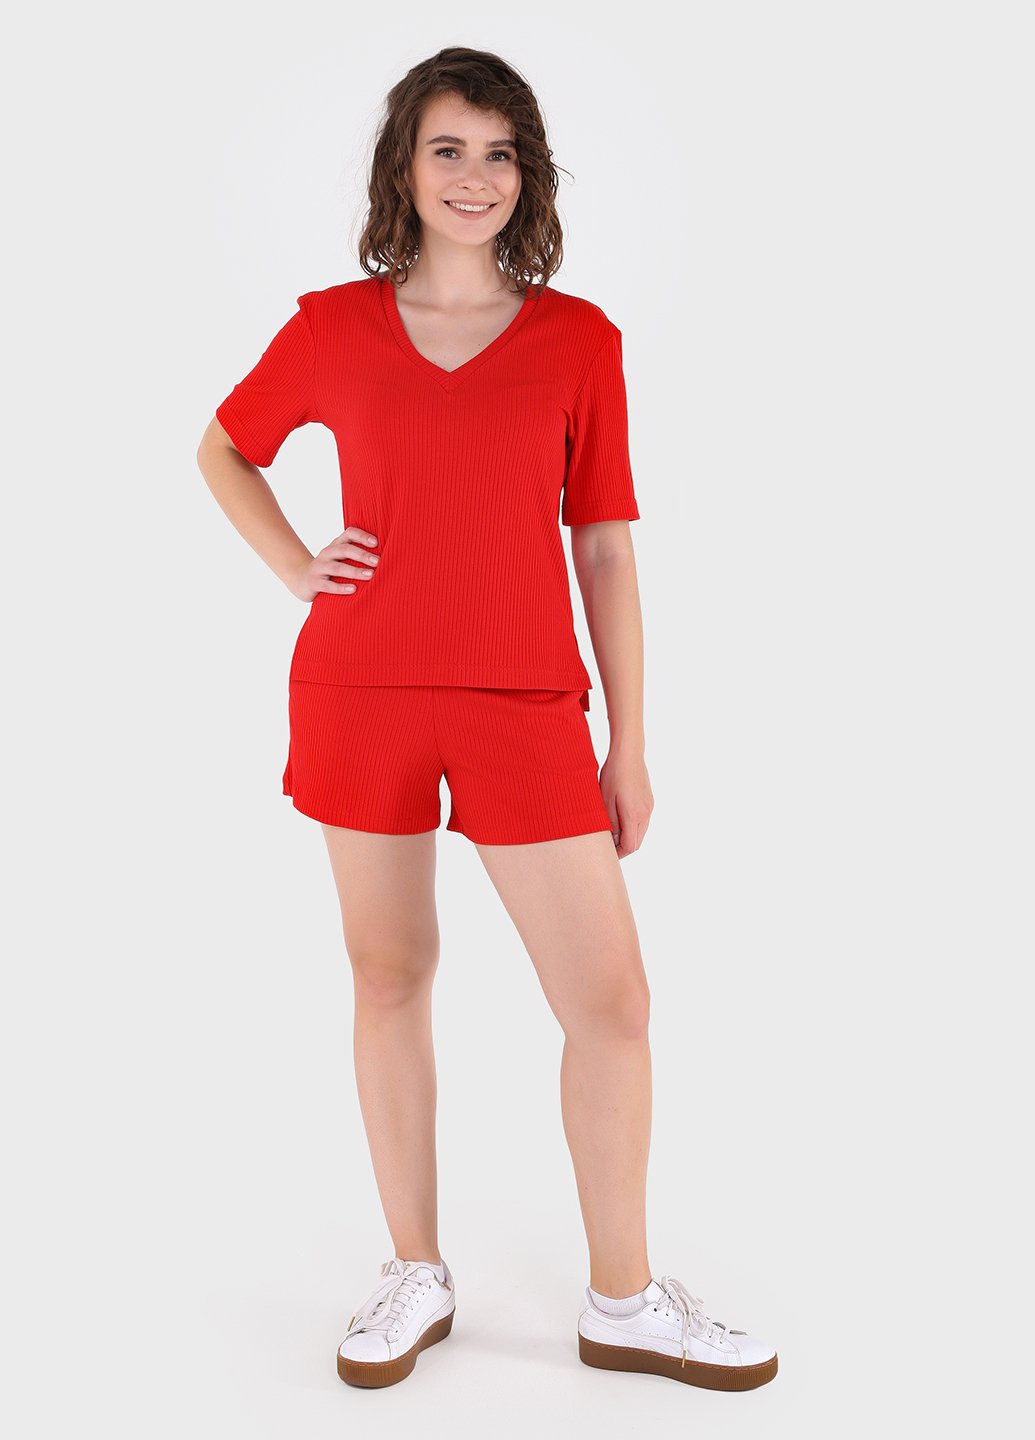 Купить Костюм женский в рубчик красного цвета Merlini Астурия 100000109, размер 42-44 в интернет-магазине